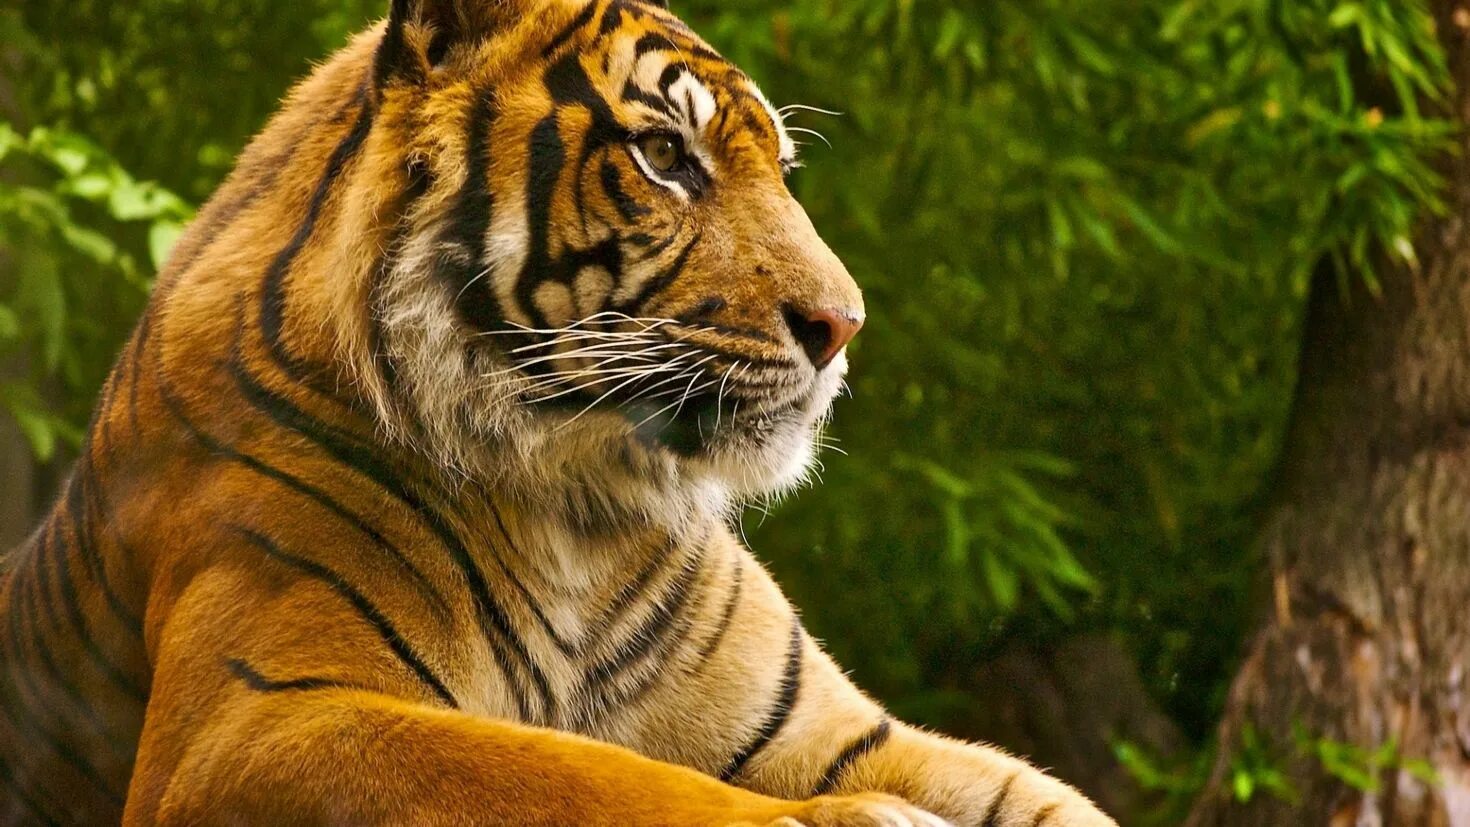 Заставки на телефон тиграми бесплатные. Красивый тигр. Тигр на заставку. Красивые обои на рабочий стол. Оранжевый тигр.